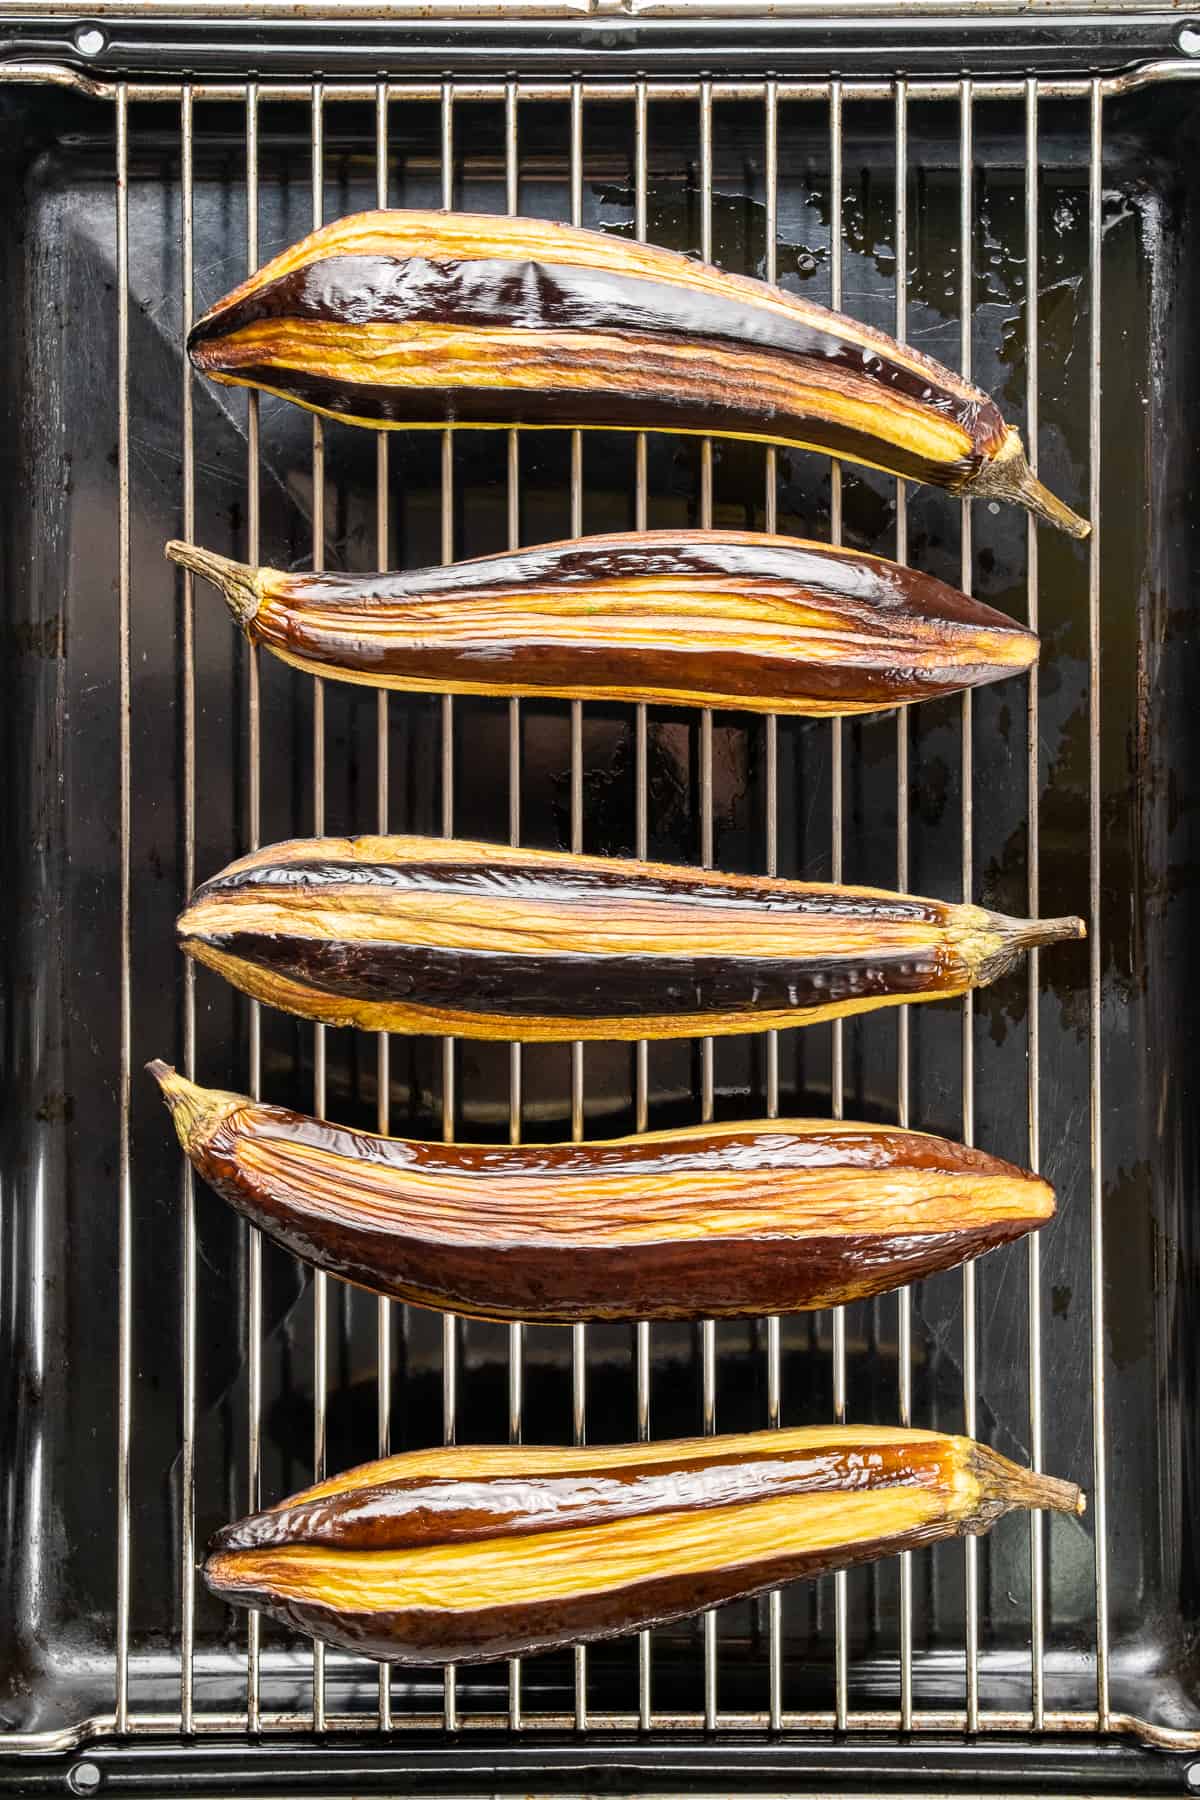 部分去皮的茄子放在烤架上烤。